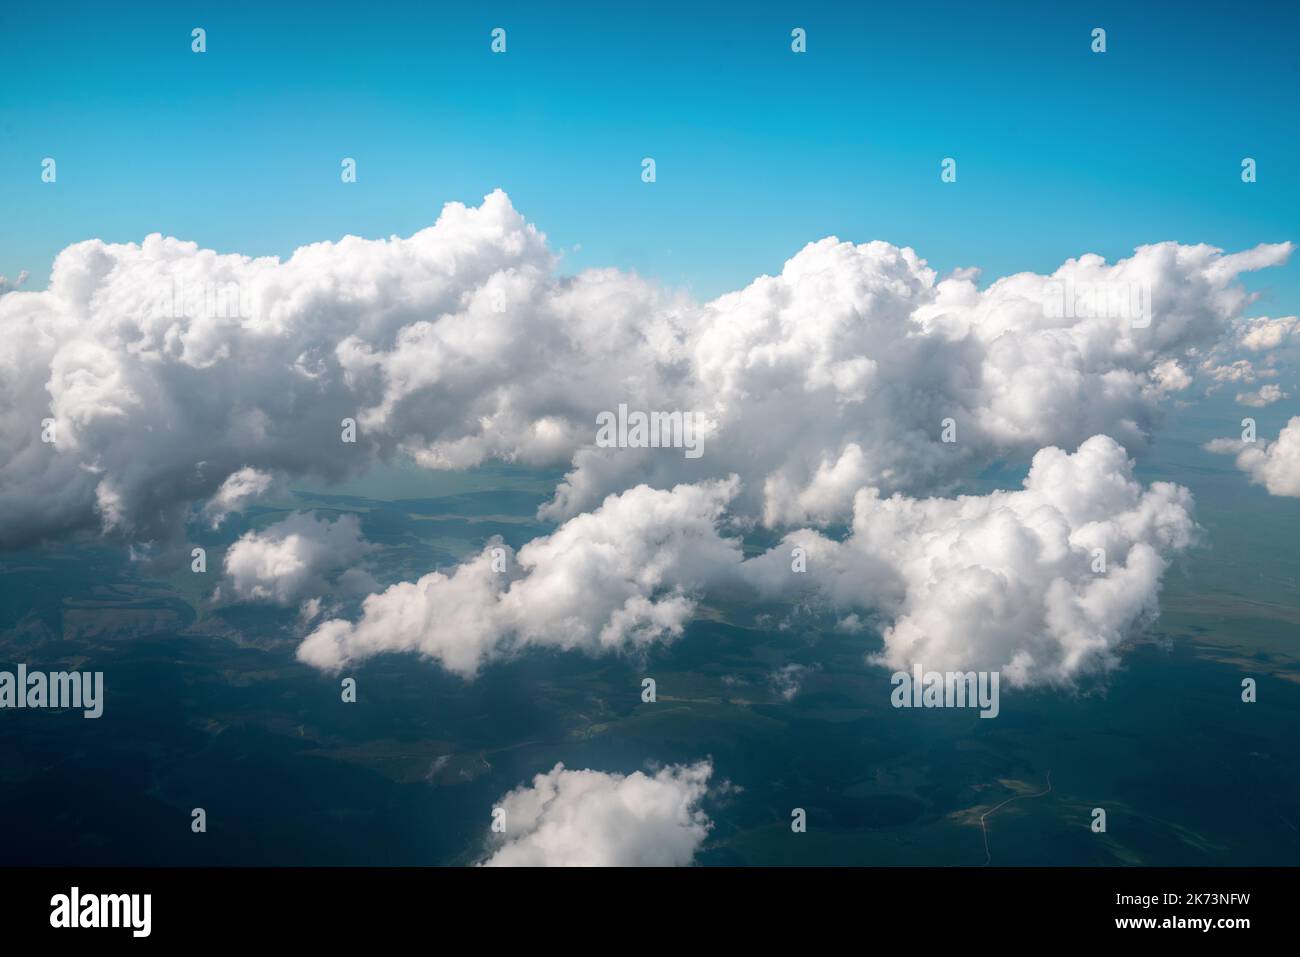 Une vue panoramique sur la lumière du jour et sur tous les nuages sous le ciel bleu, vue sur les nuages et les montagnes, concept de papier peint. Photo de haute qualité Banque D'Images